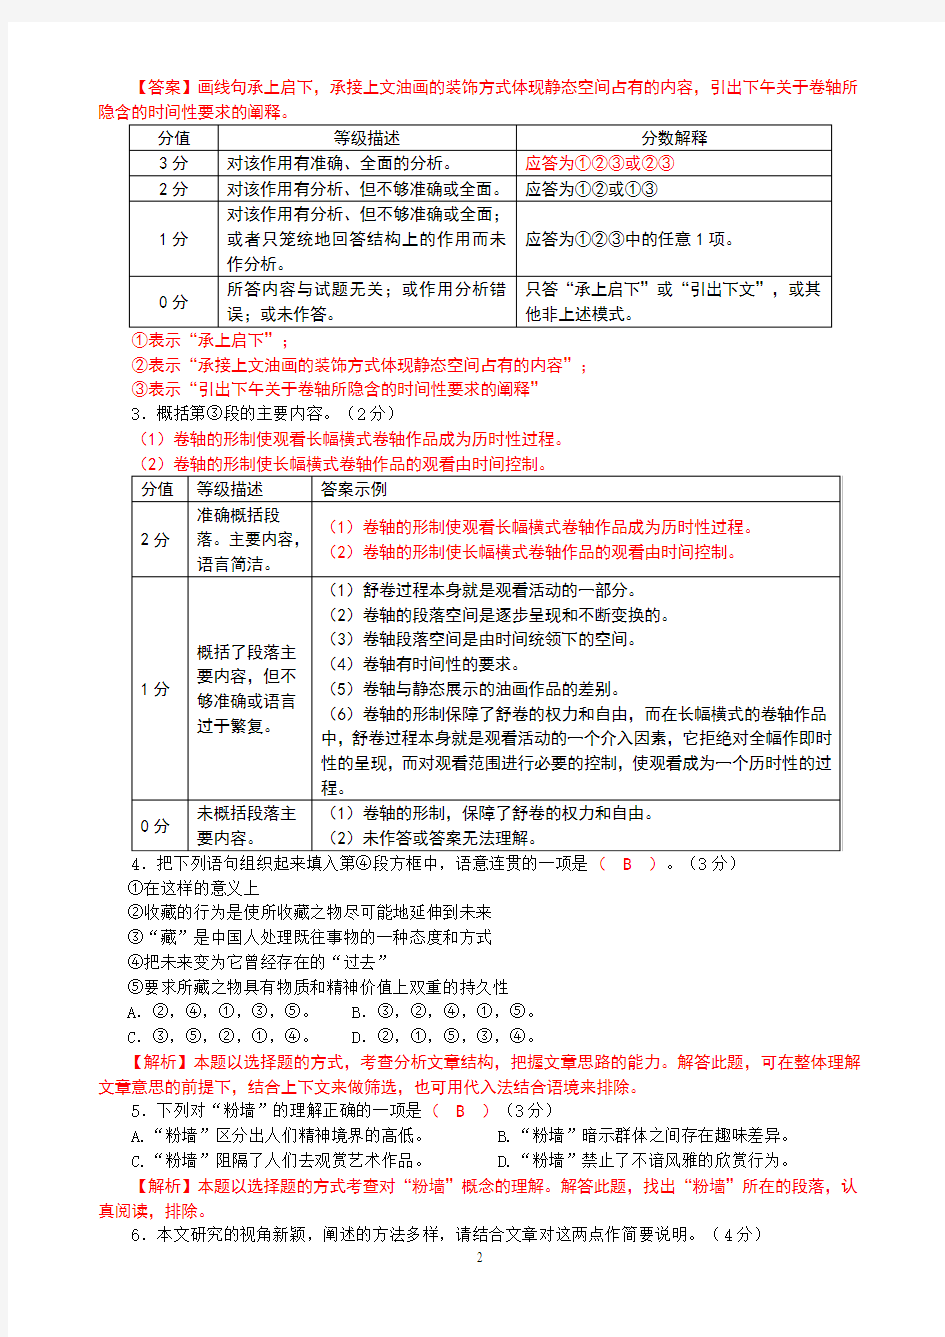 2013年高考上海卷语文试题逐题详解(教师精校版)